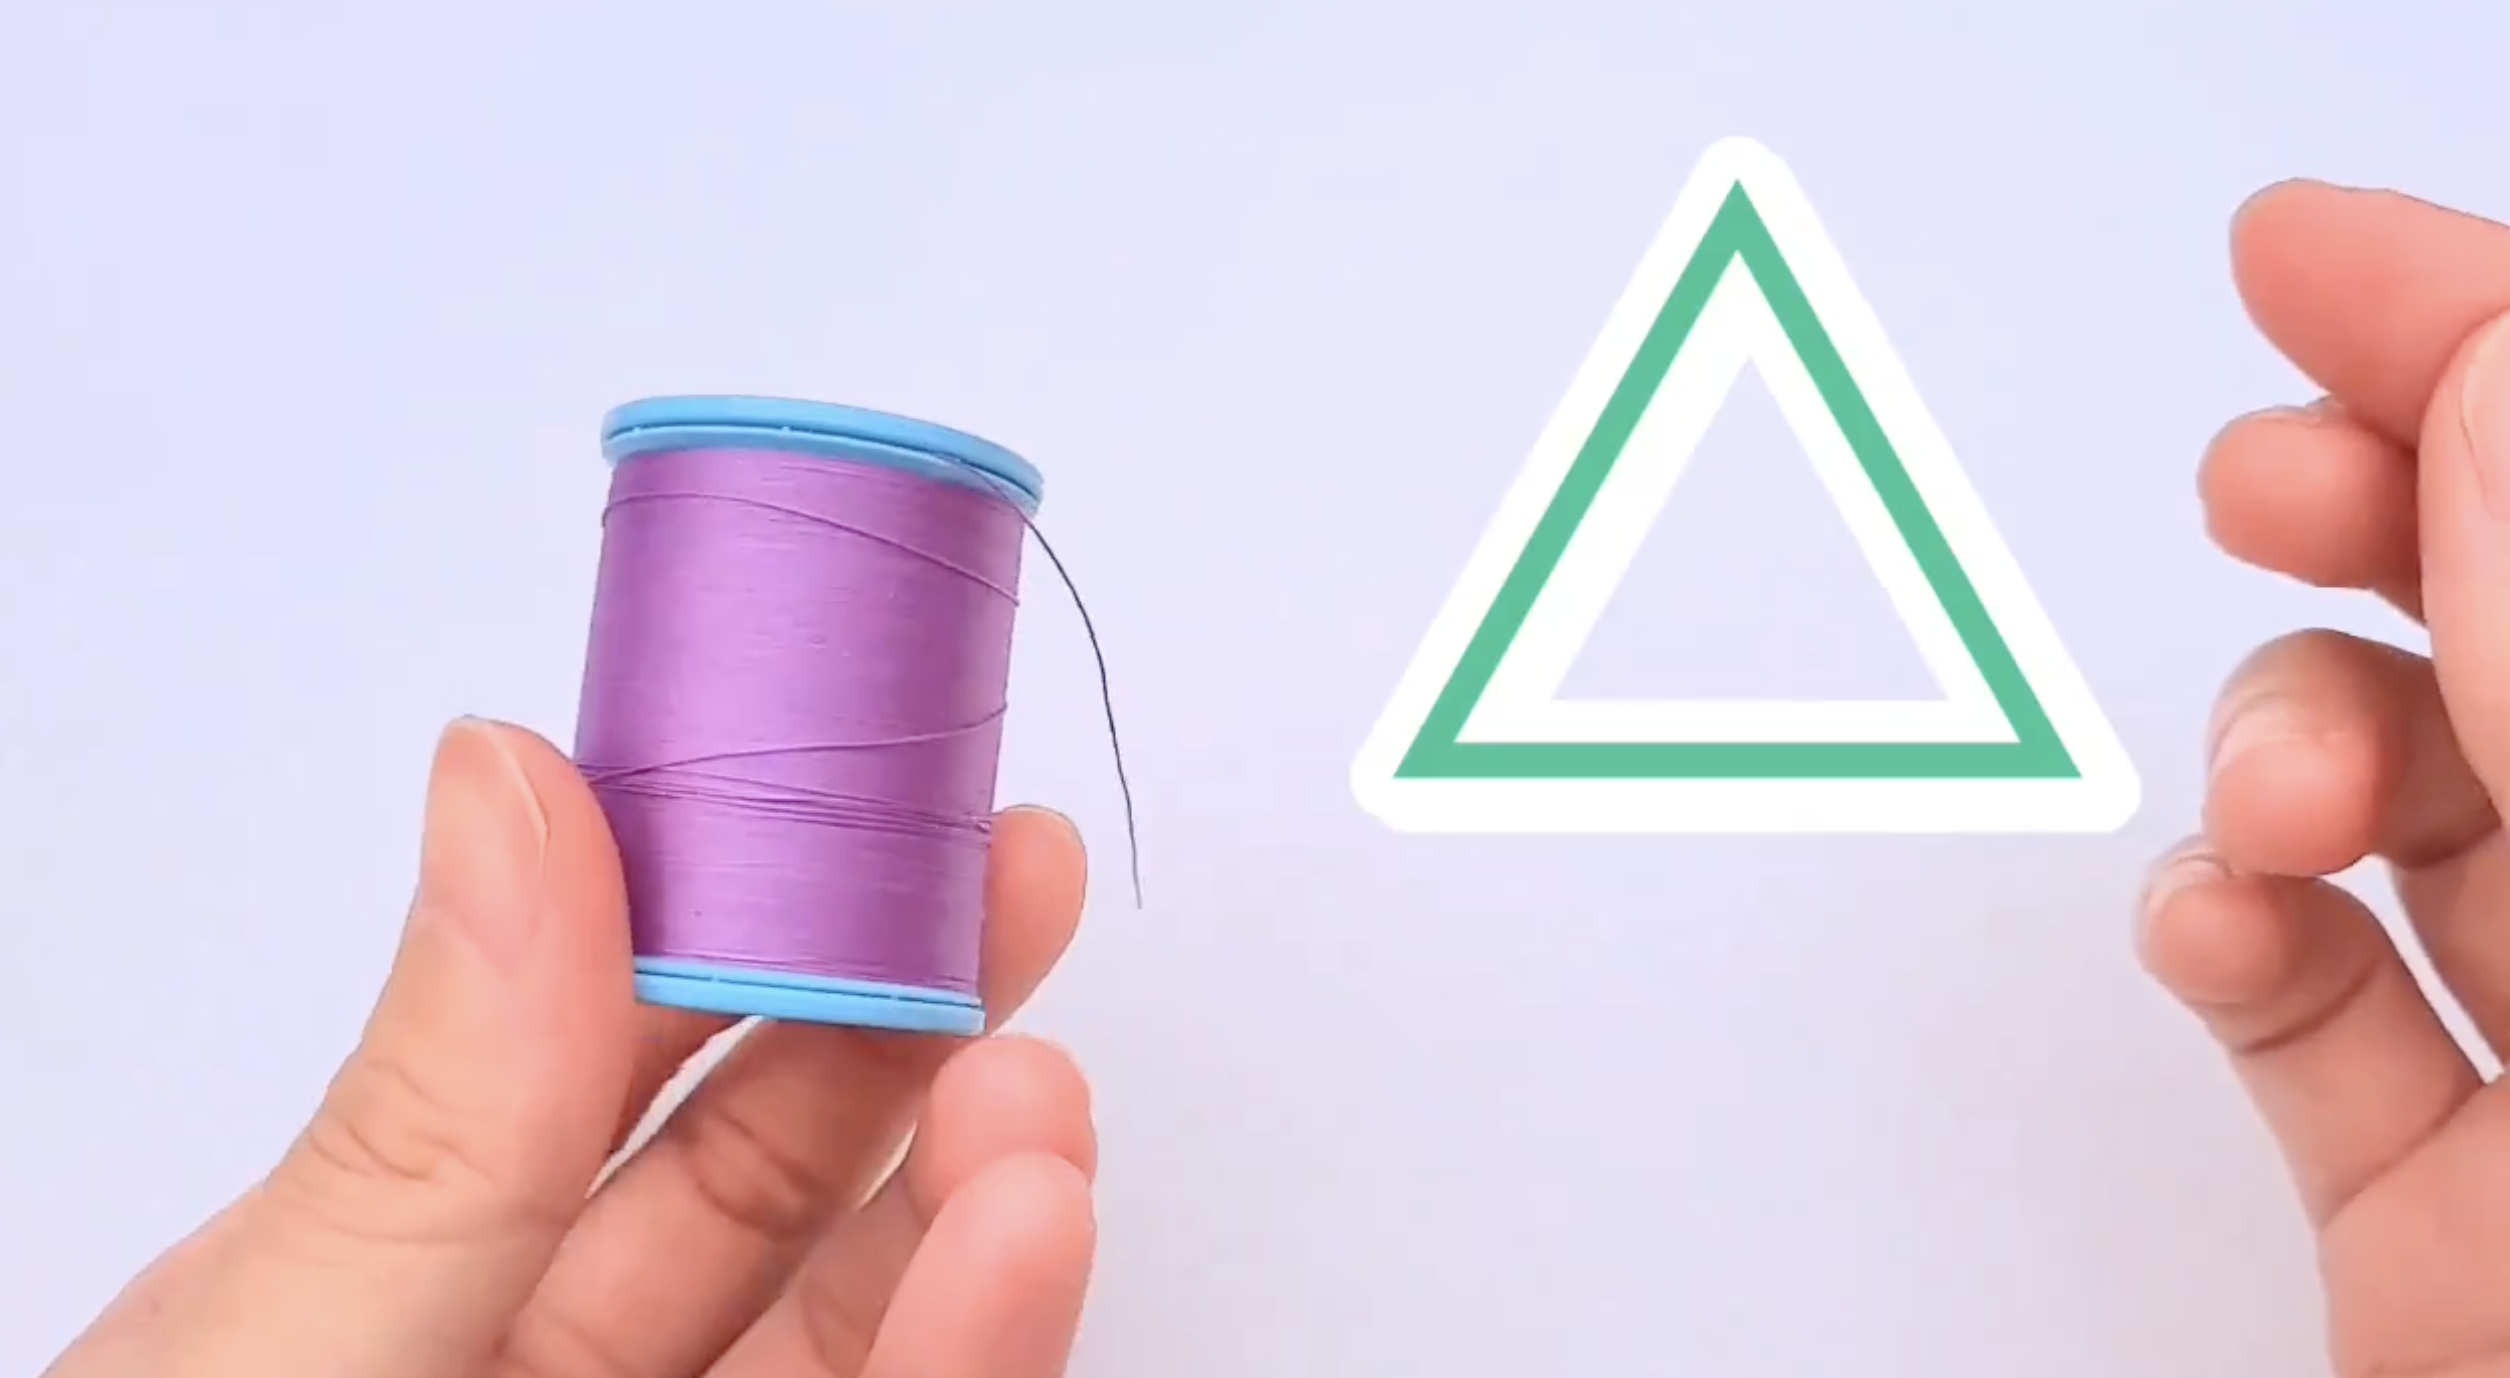 手が紫の糸が巻かれた糸巻きを持っており、隣には緑色の三角形の形の紙が浮かんでいます。